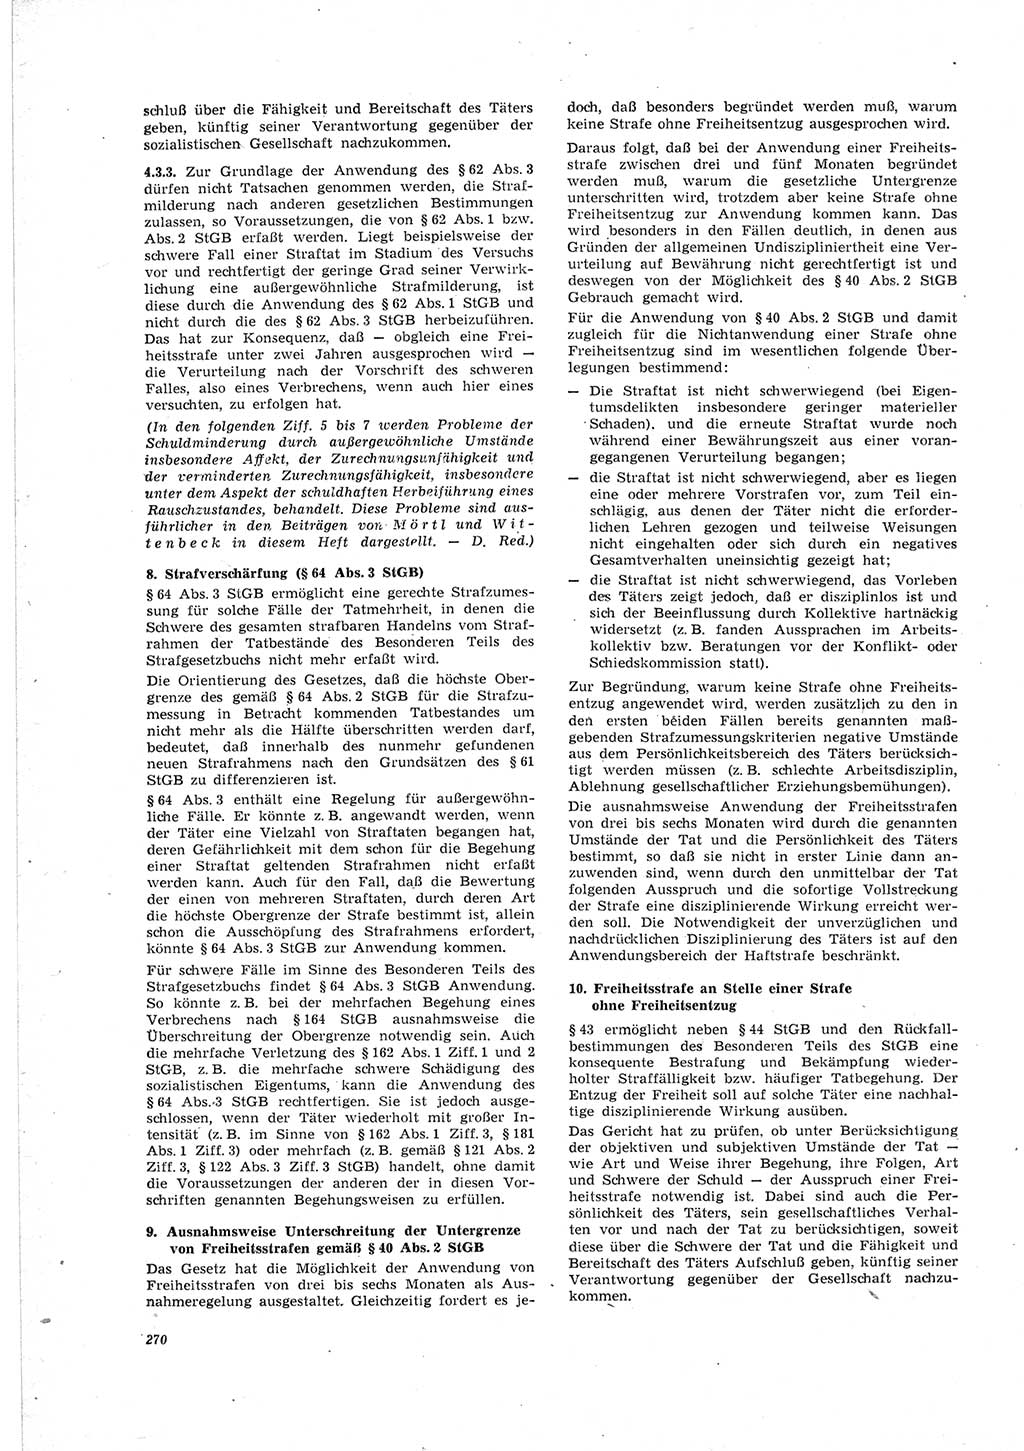 Neue Justiz (NJ), Zeitschrift für Recht und Rechtswissenschaft [Deutsche Demokratische Republik (DDR)], 23. Jahrgang 1969, Seite 270 (NJ DDR 1969, S. 270)